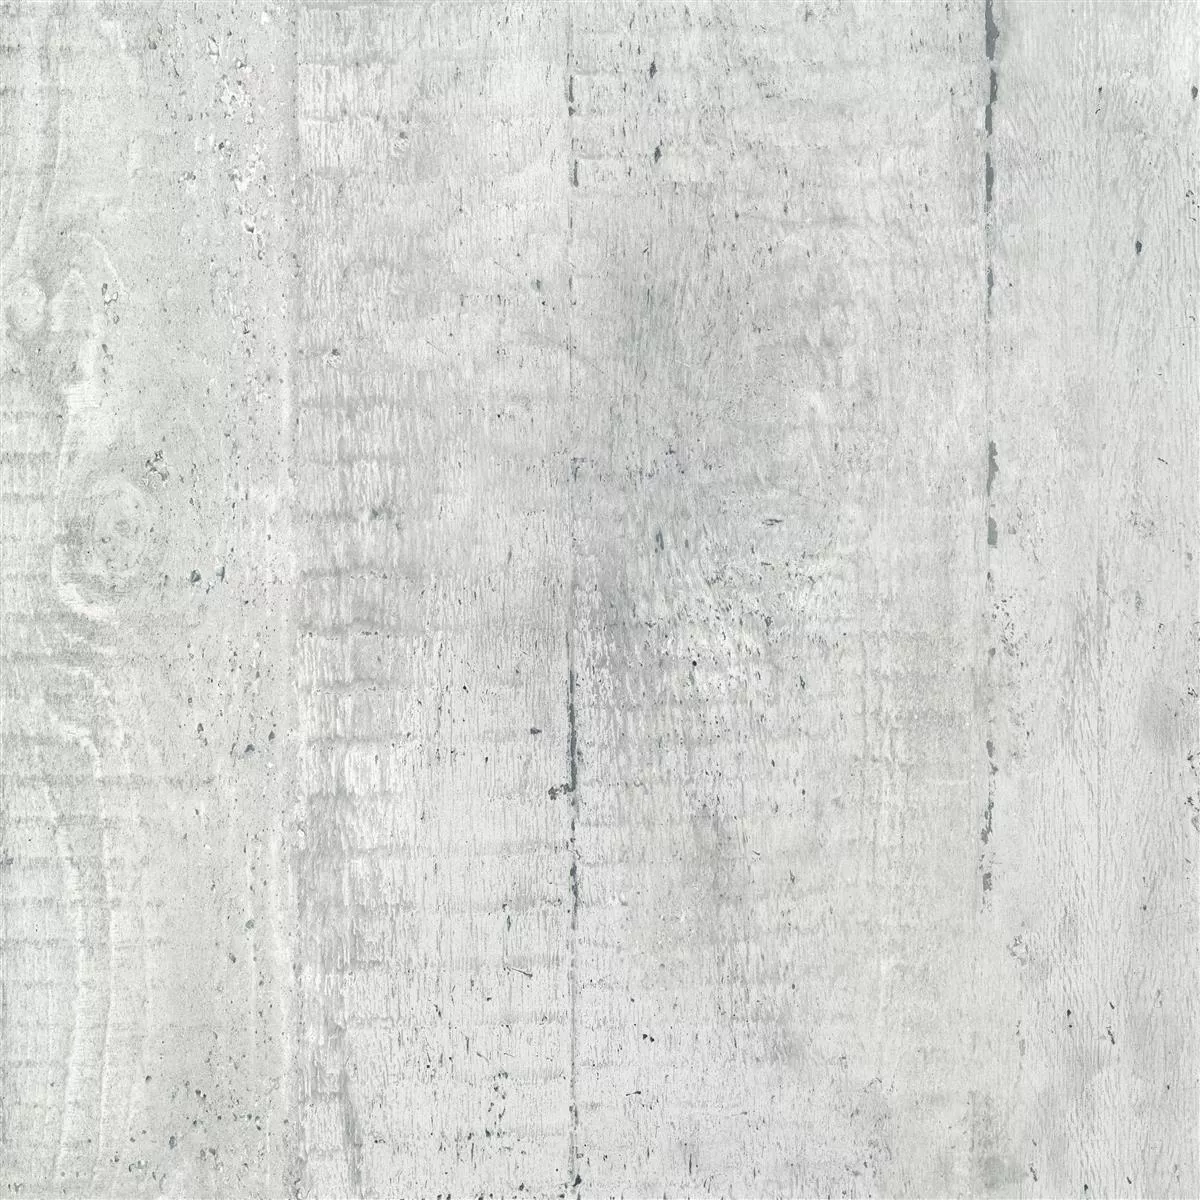 Πρότυπο Πλακάκια Δαπέδου Gorki Όψη Ξύλου 60x60cm Γυαλισμένο Γκρί